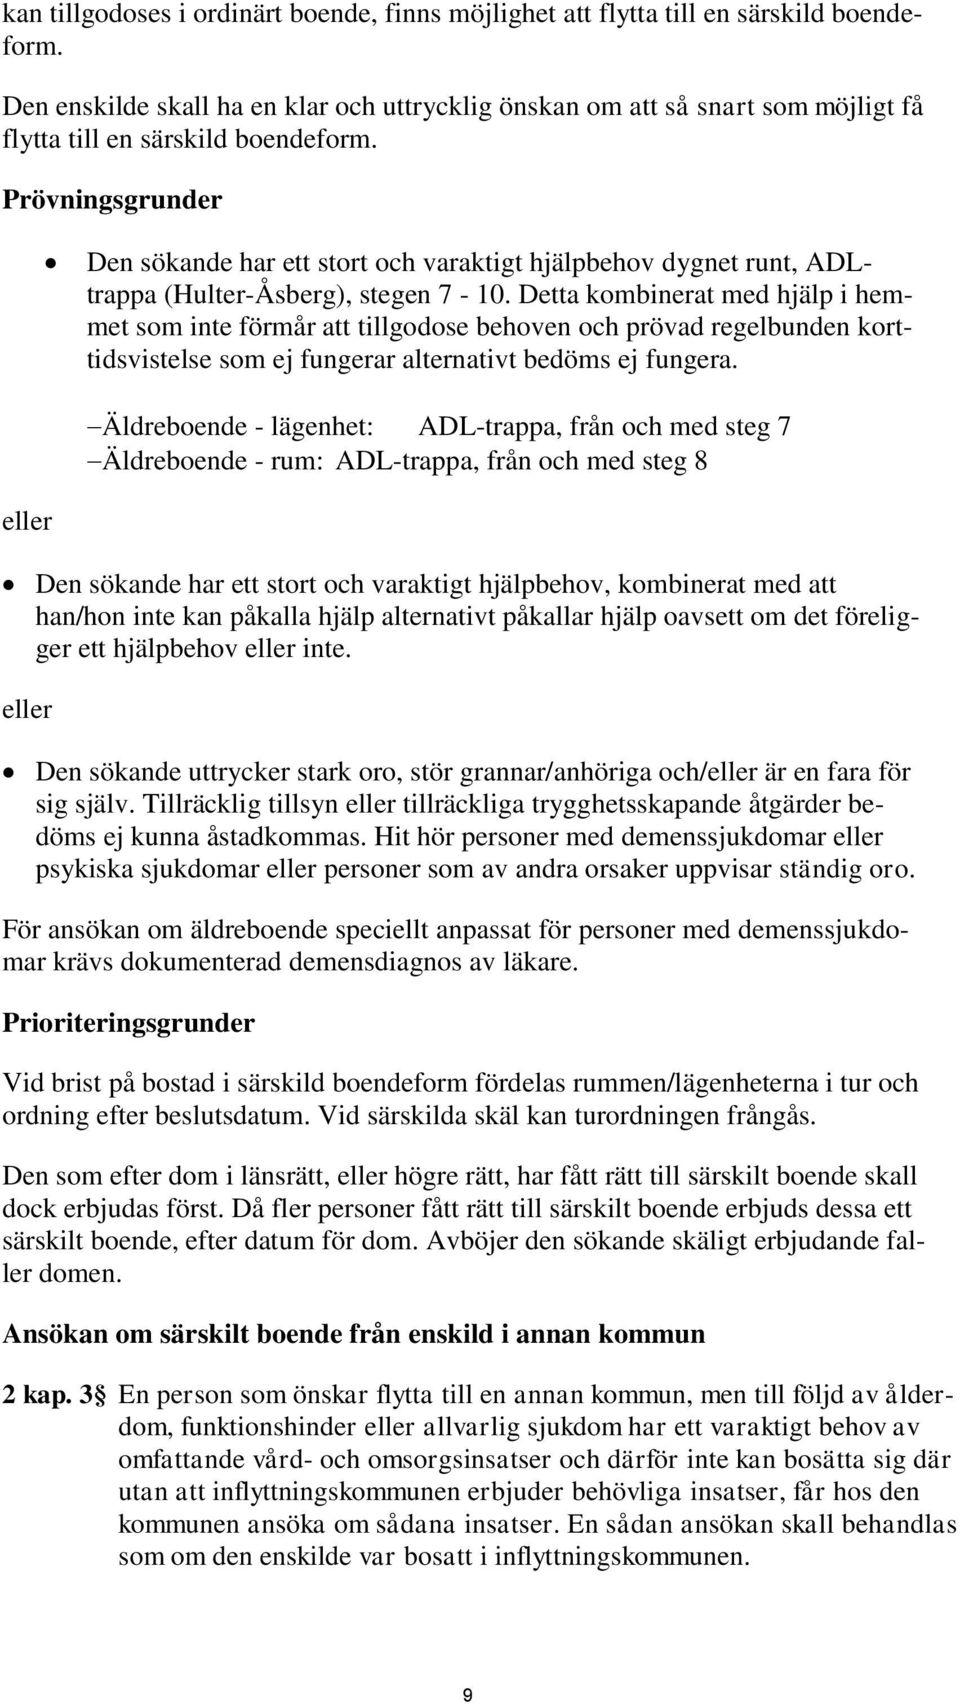 Prövningsgrunder Den sökande har ett stort och varaktigt hjälpbehov dygnet runt, ADLtrappa (Hulter-Åsberg), stegen 7-10.